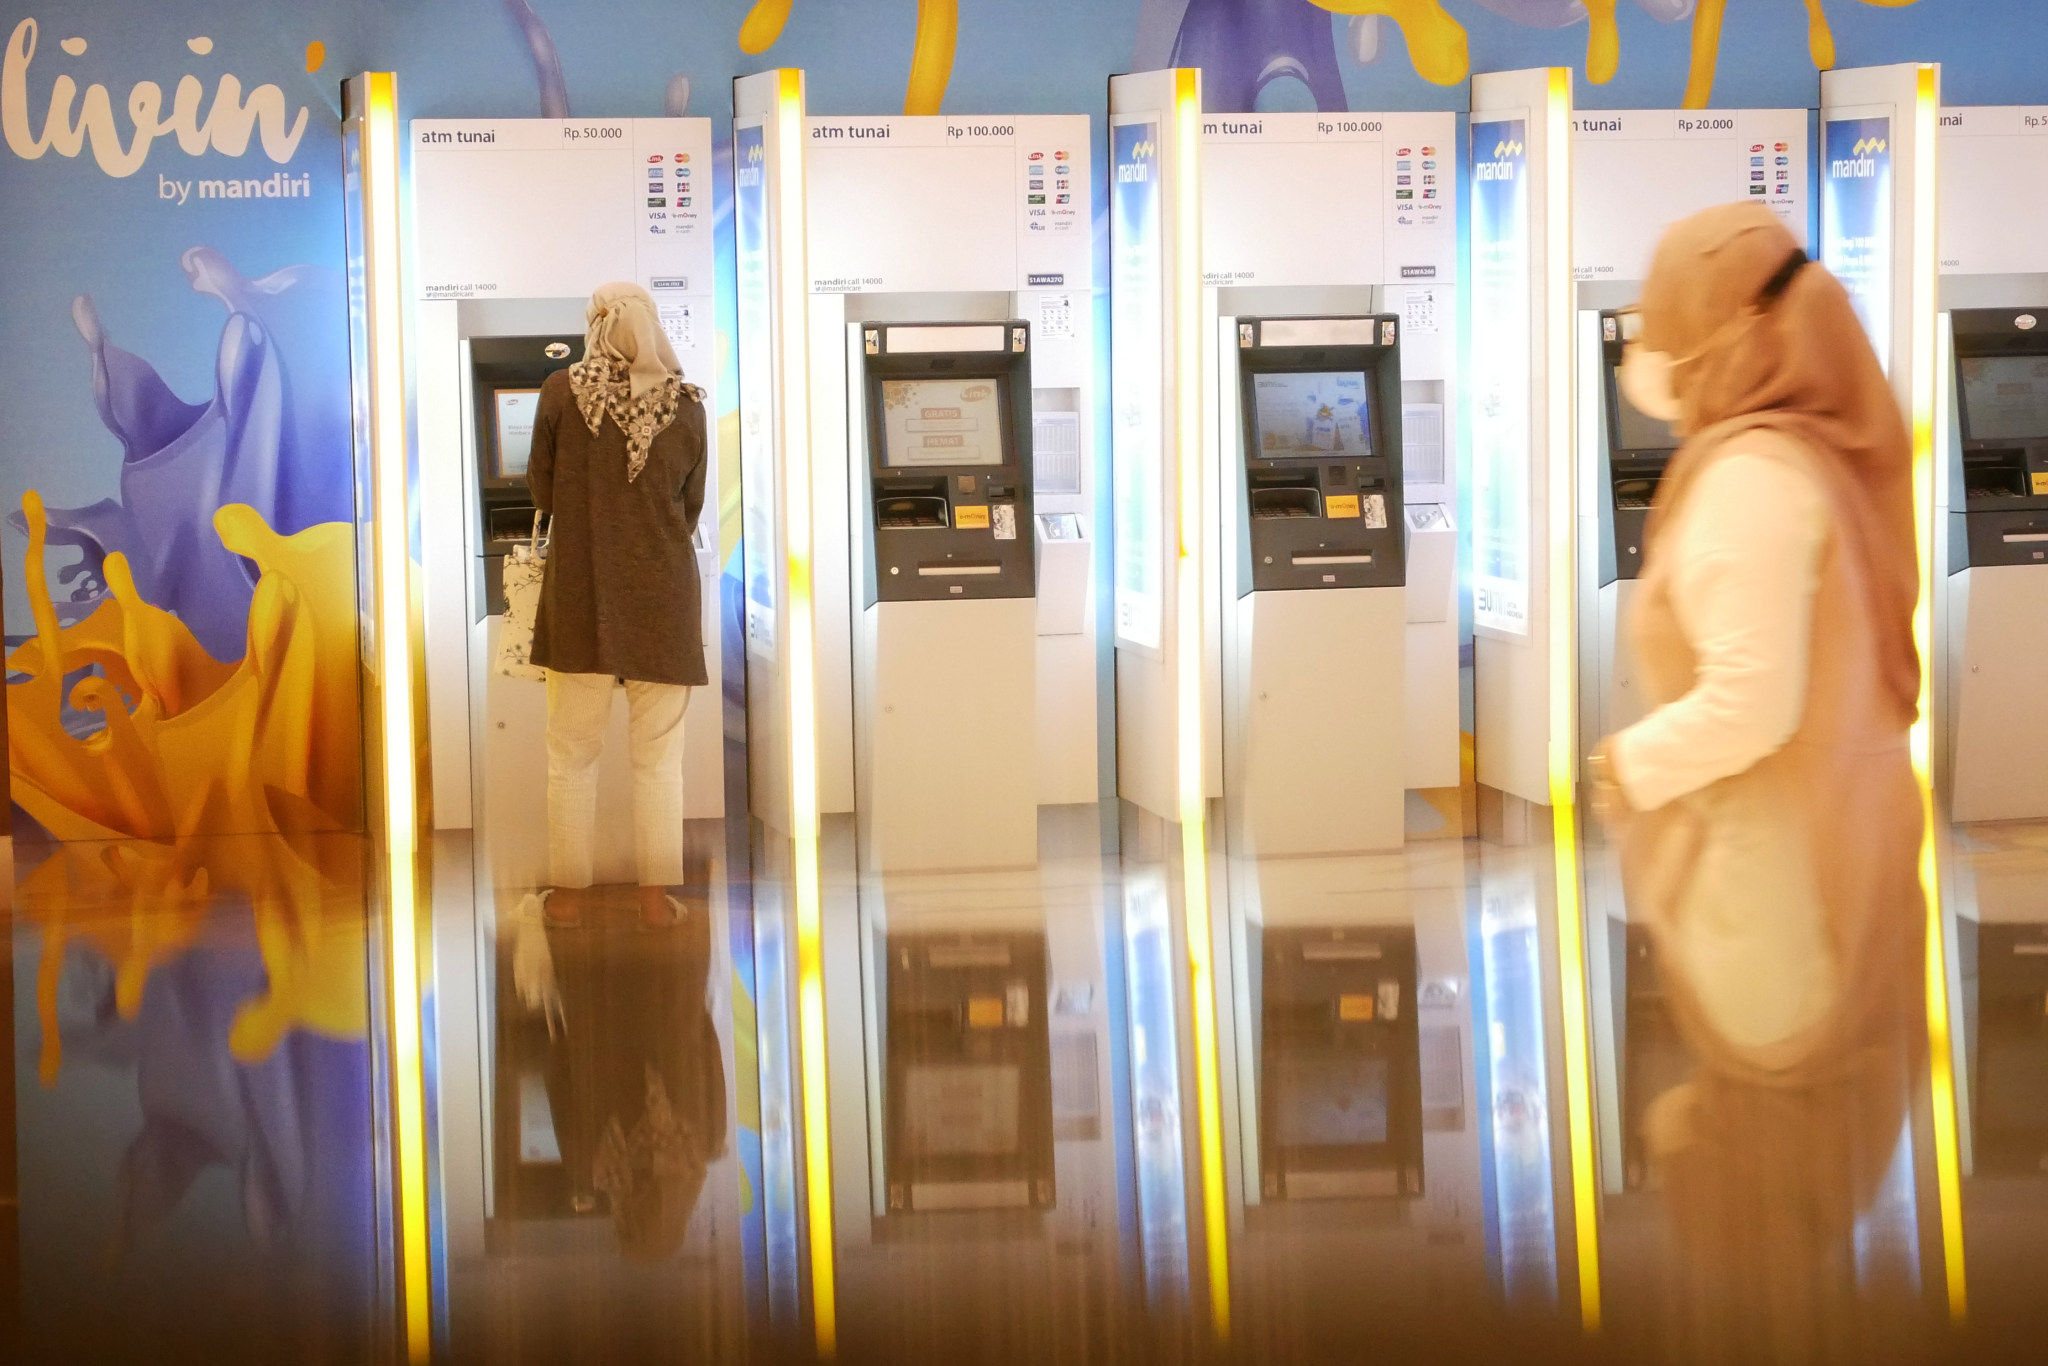 Nasabah melakukan transaksi dengan mesin ATM berlogo Livin' by Mandiri di kantor Cabang Bank Mandiri, Jakarta, Jum'at, 21 Januari 2022. Foto: Ismail Pohan/TrenAsia